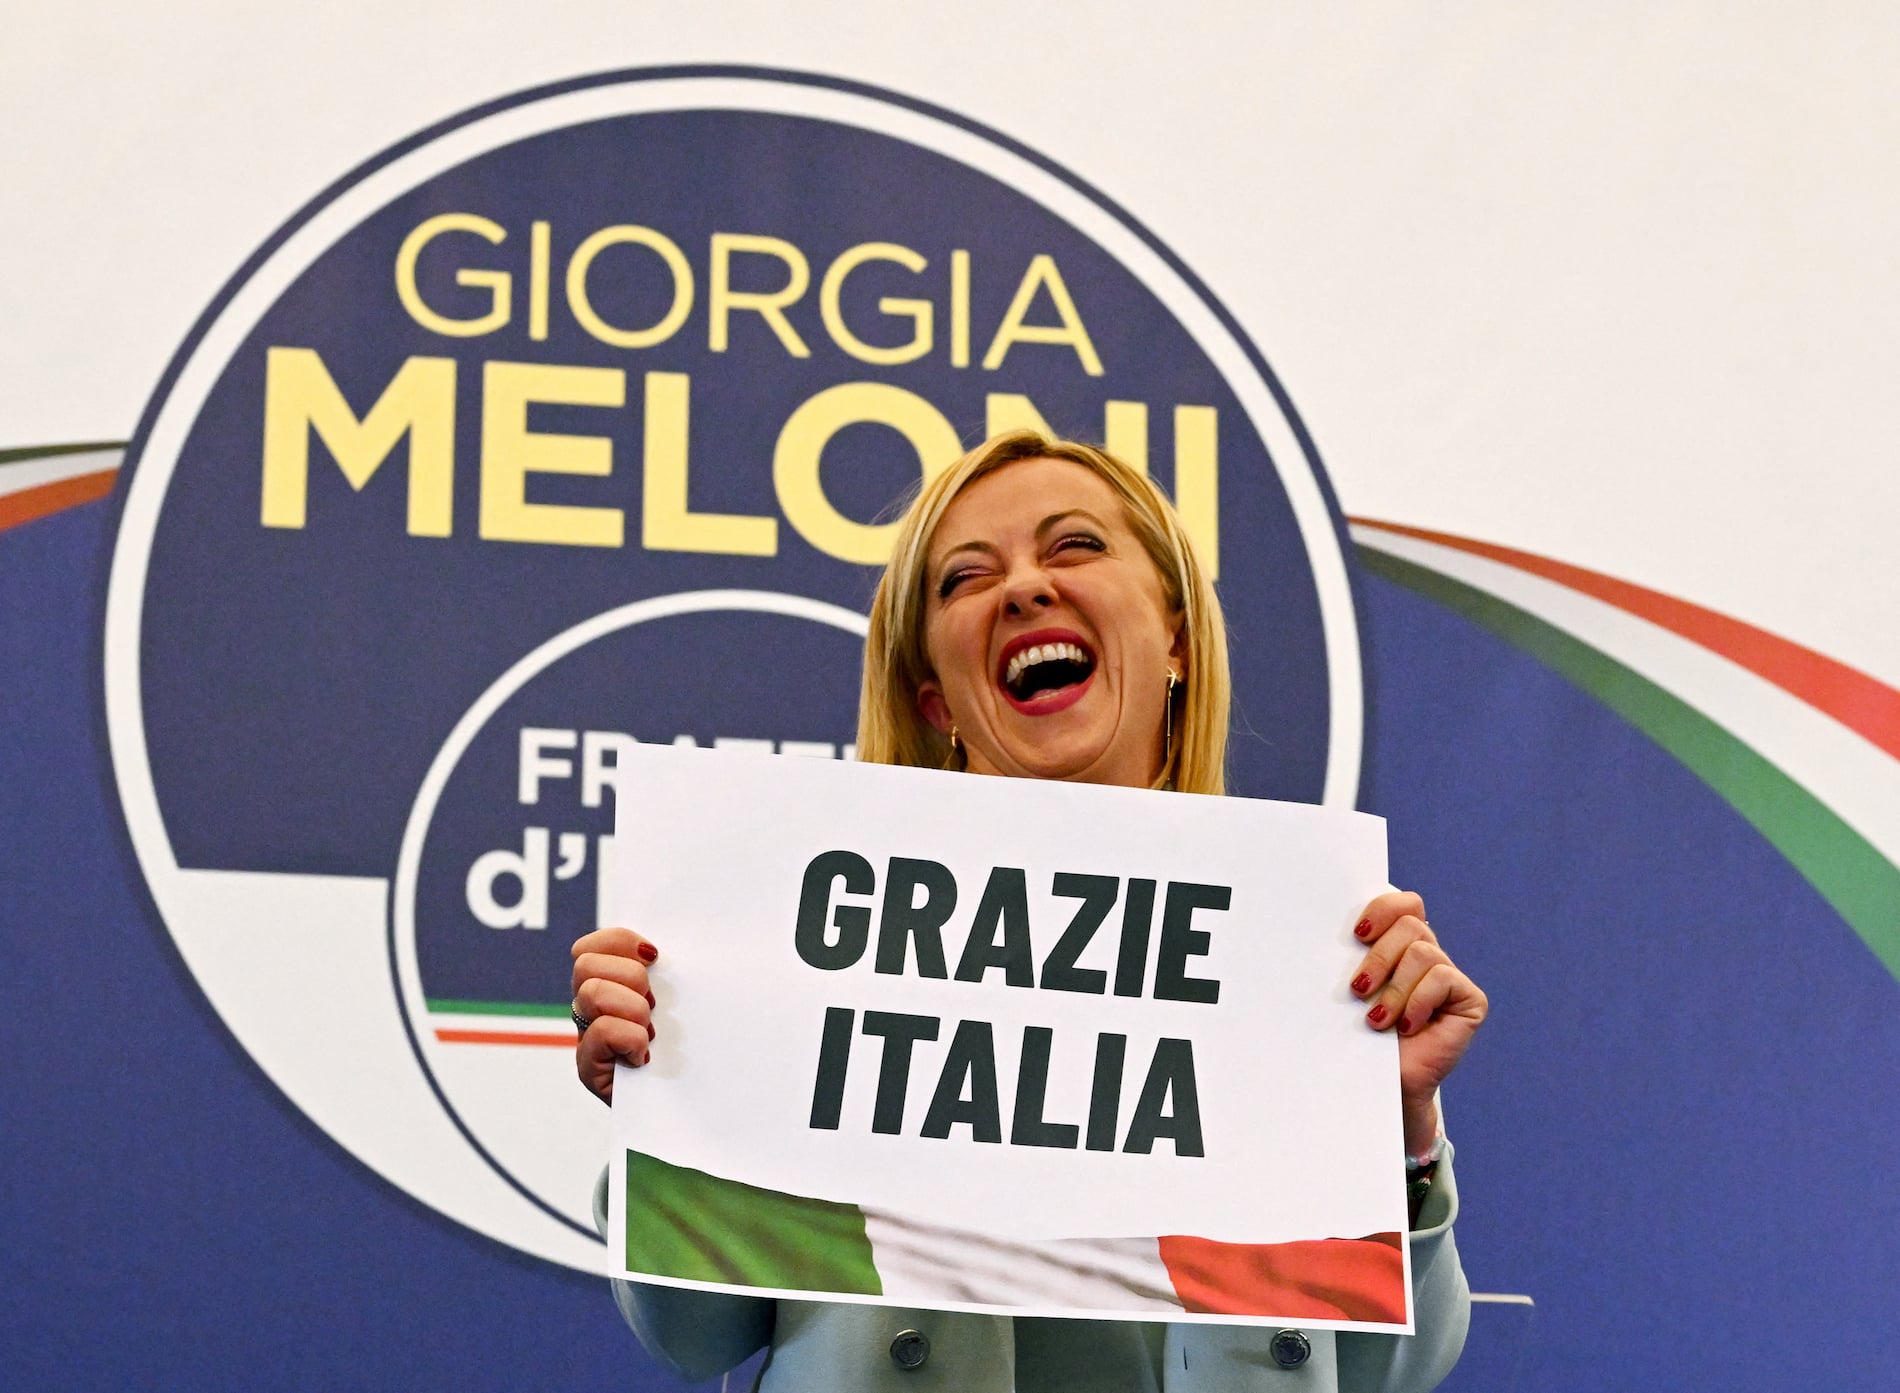 Giorgia Meloni en Italia | Extrema derecha aboga por una Europa “blanca, cristiana y contra derechos LGBT y migrantes”